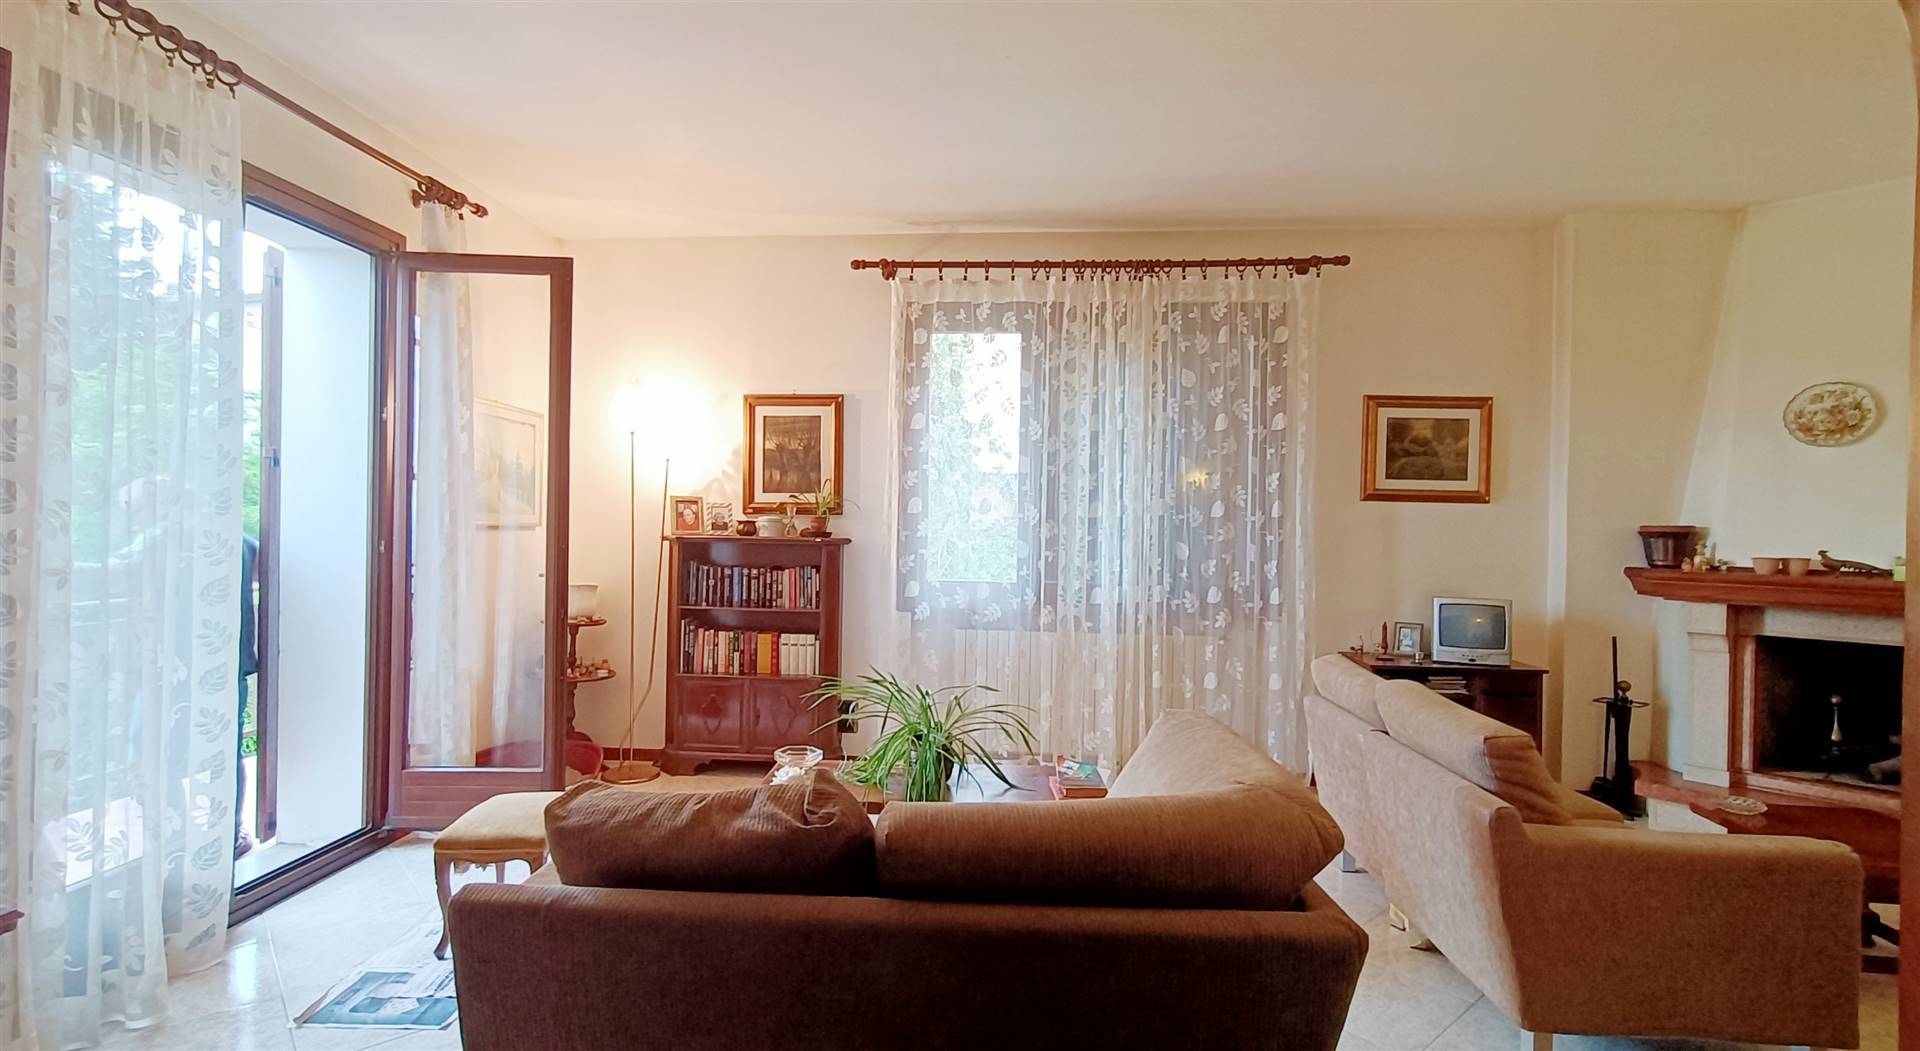 Appartamento in vendita a Castiglione dei Pepoli, 5 locali, prezzo € 135.000 | PortaleAgenzieImmobiliari.it